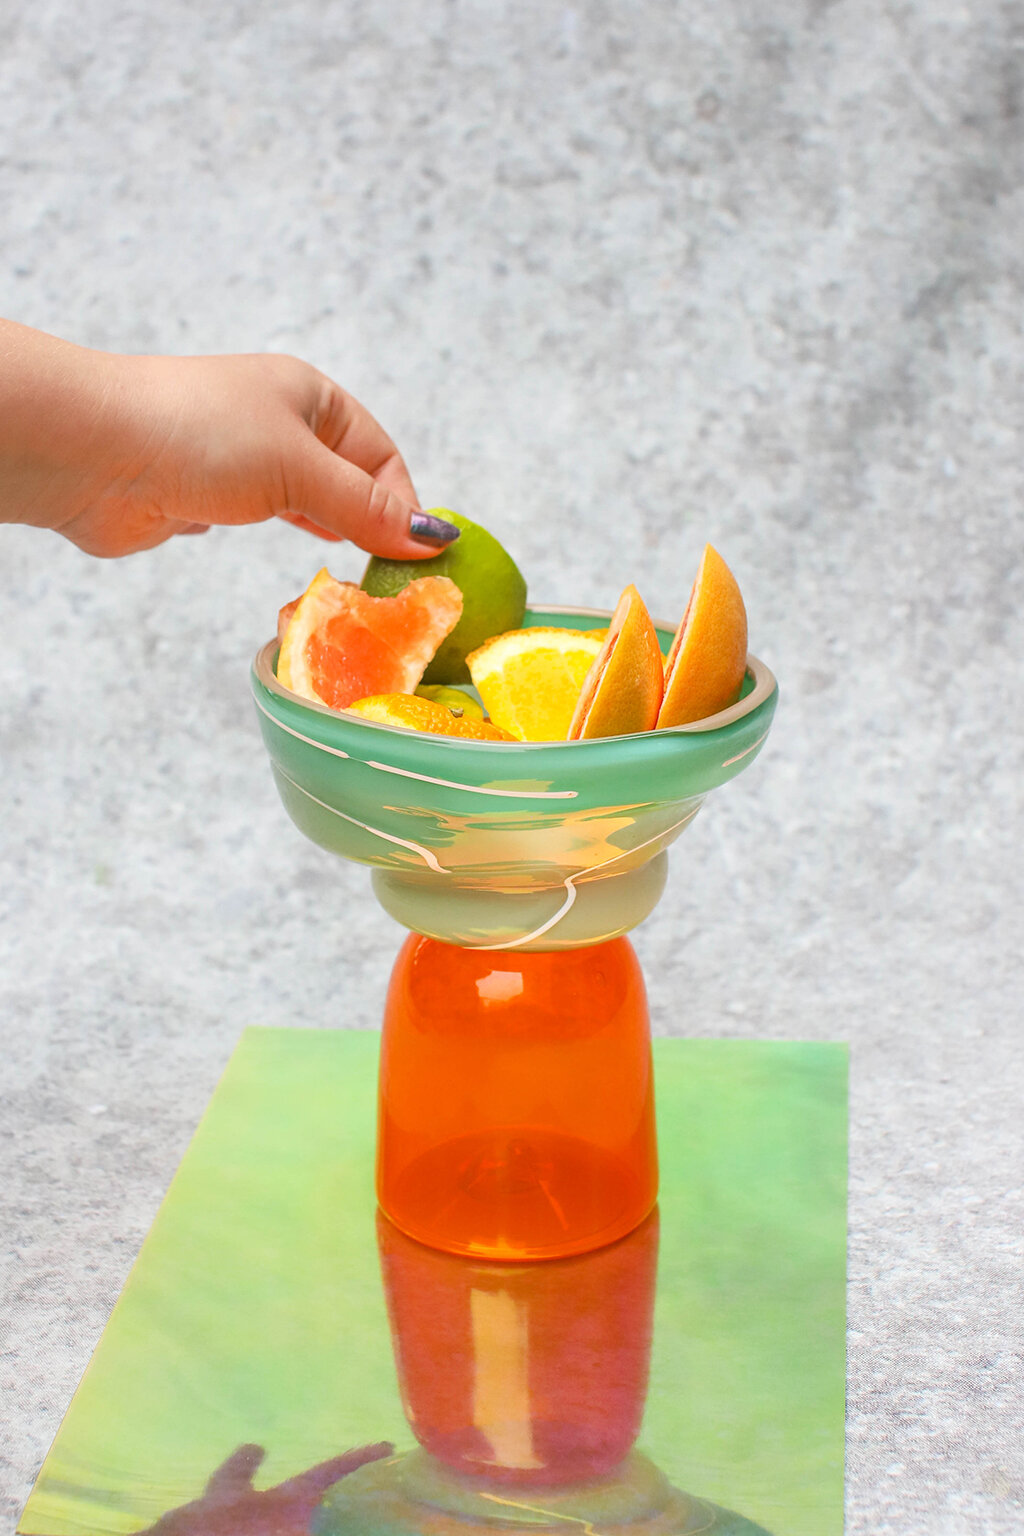 teal-orange-bowl-web-008.jpg